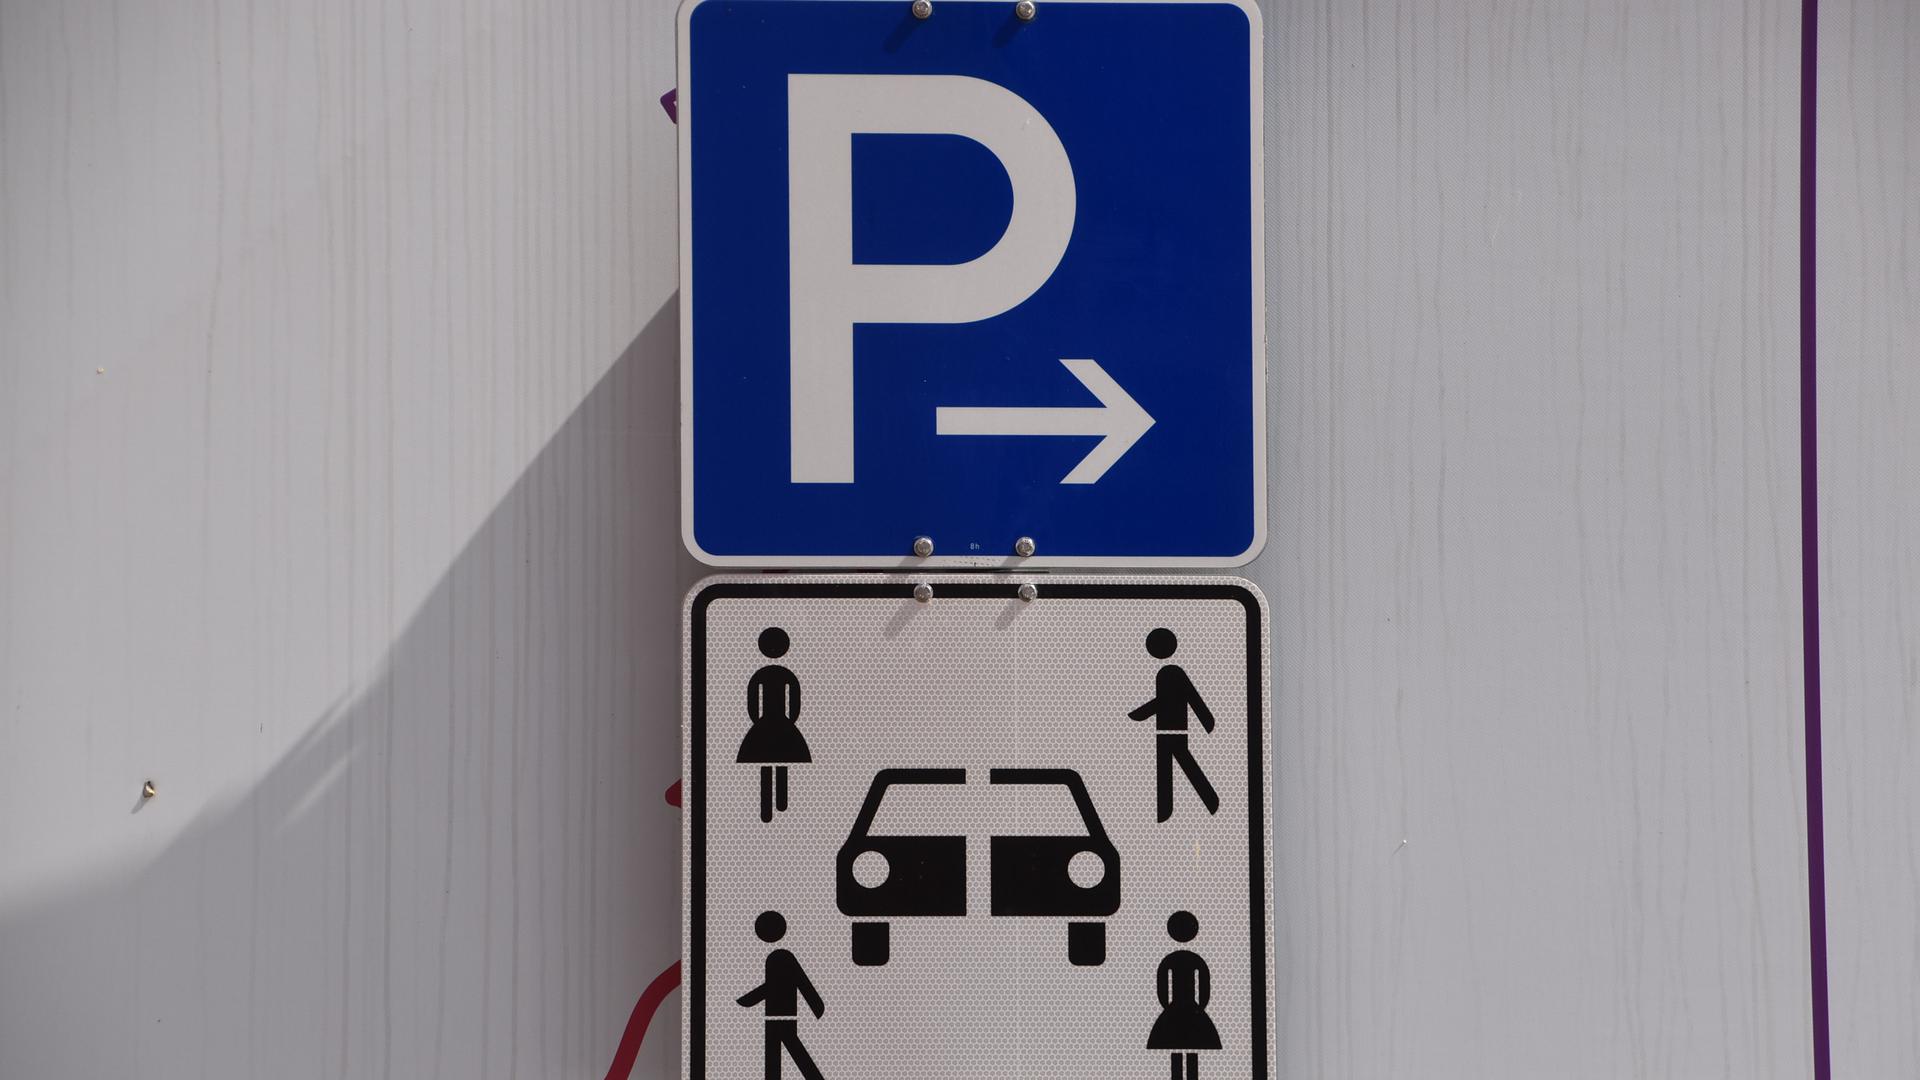 Ein Scheidungsparkplatz? Das neue Schild in Baden-Baden gibt Rätsel auf.